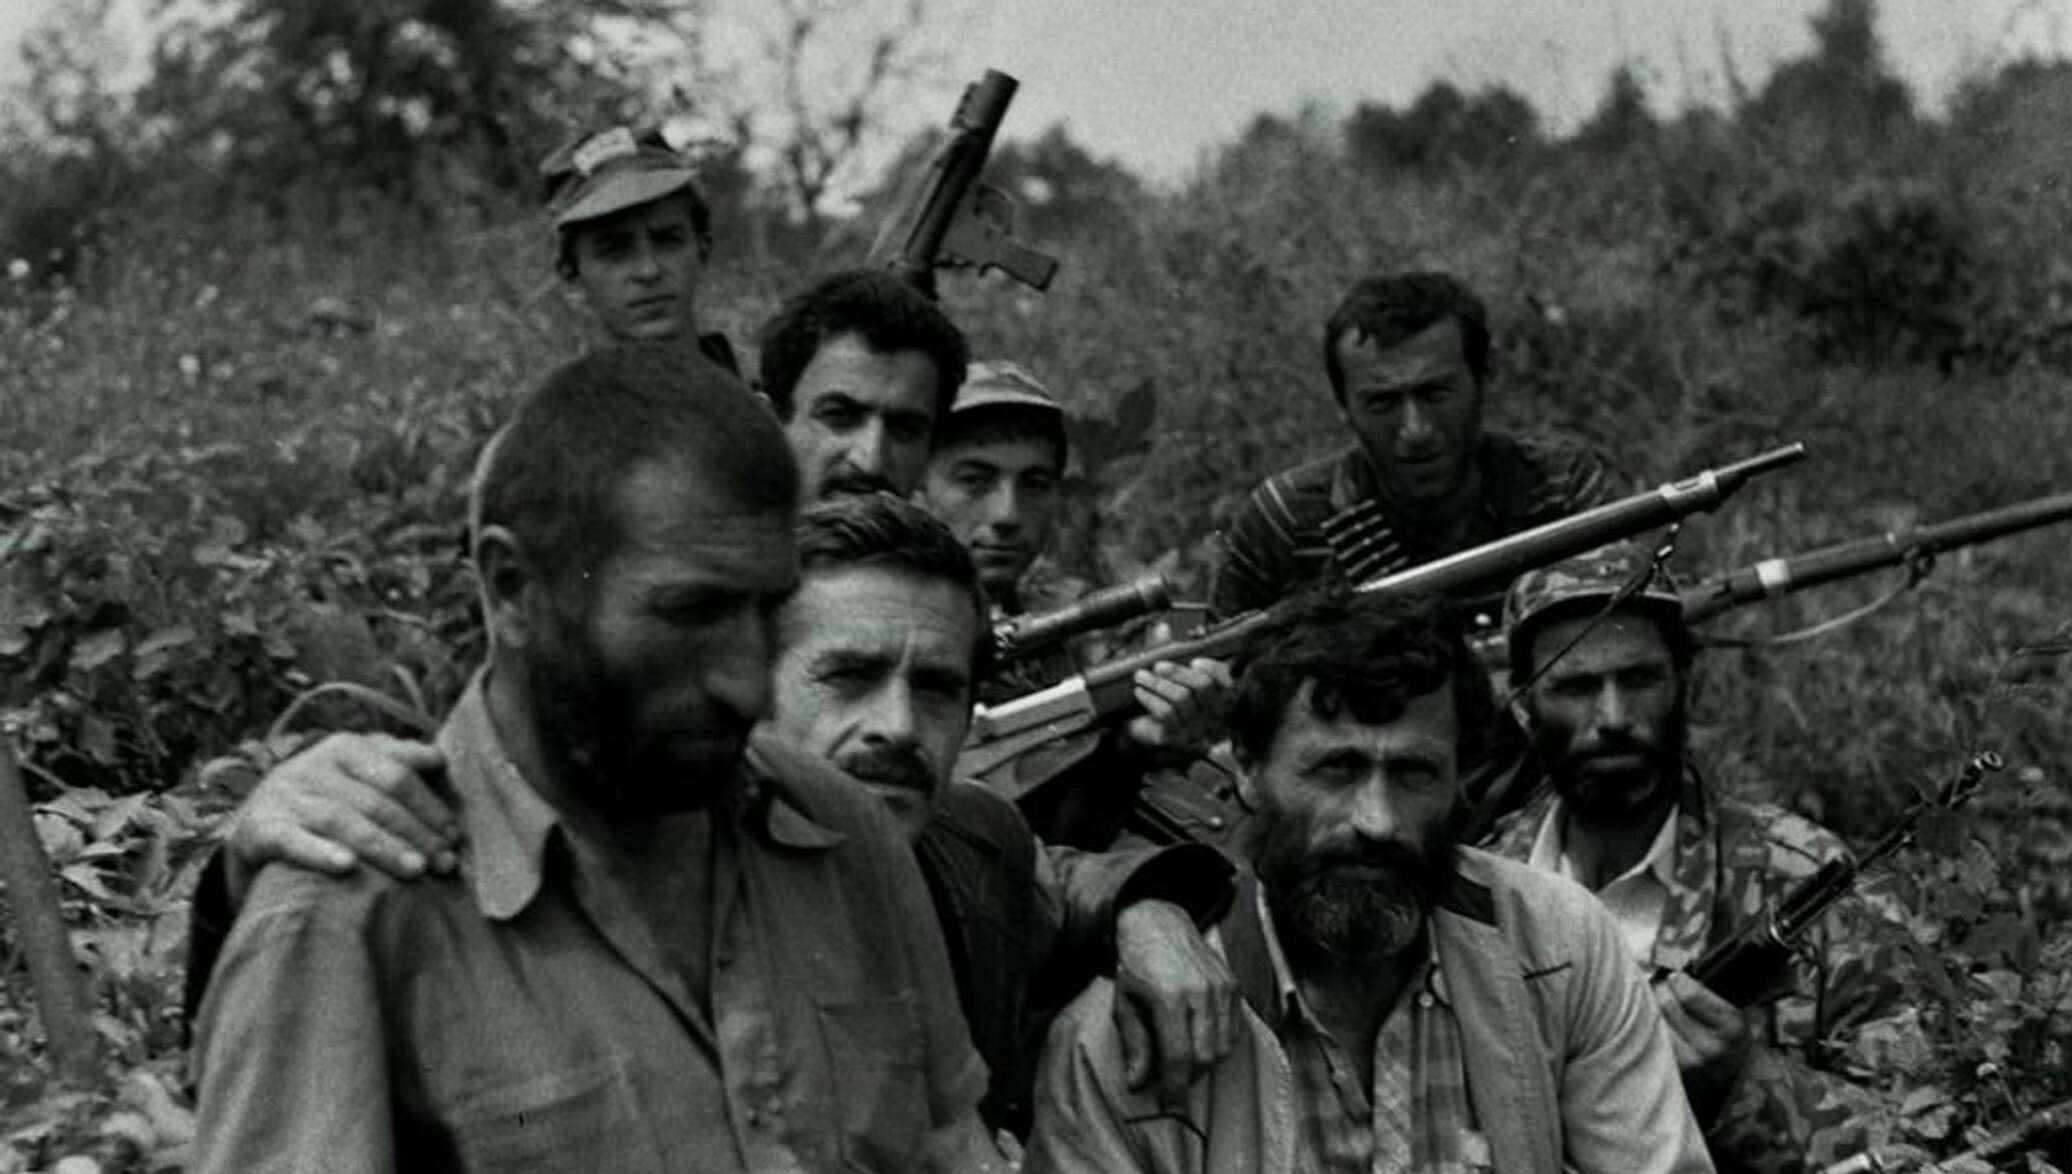 Абхазский конфликт 1992. Грузино-Абхазский конфликт 1992-1993. Ополченцы Абхазии 1992-1993. Российские солдаты в Абхазии 1992-1993.